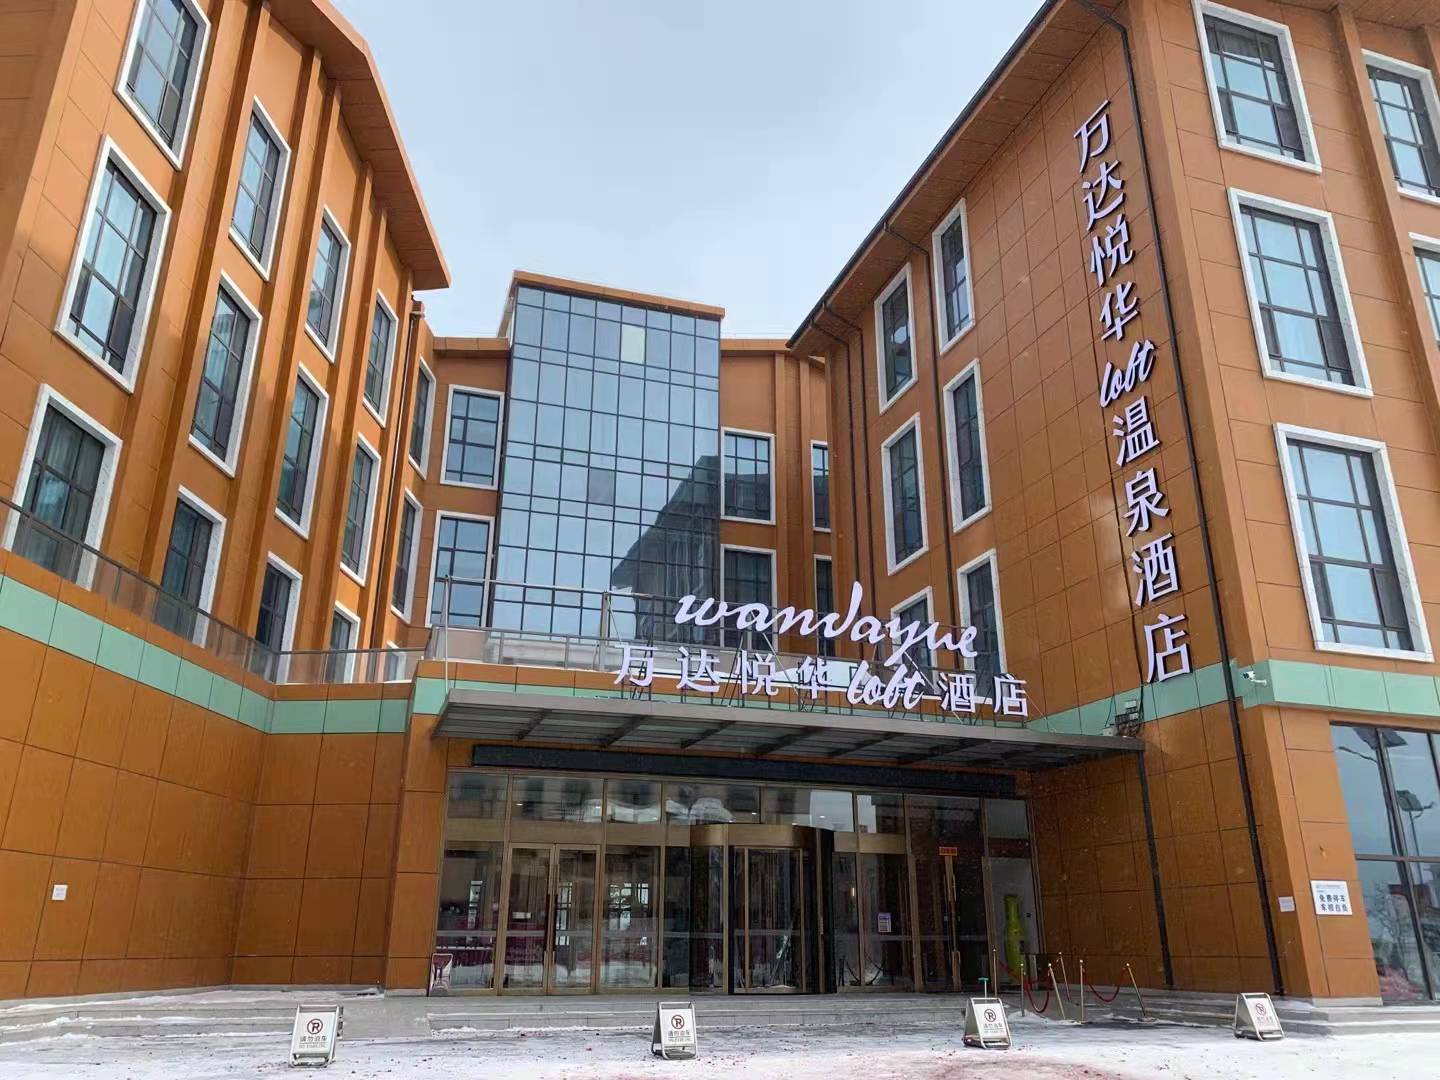 福州悦华酒店 (福州市) - C&D Hotel Fuzhou - 酒店预订 /预定 - 923条旅客点评与比价 - Tripadvisor猫途鹰